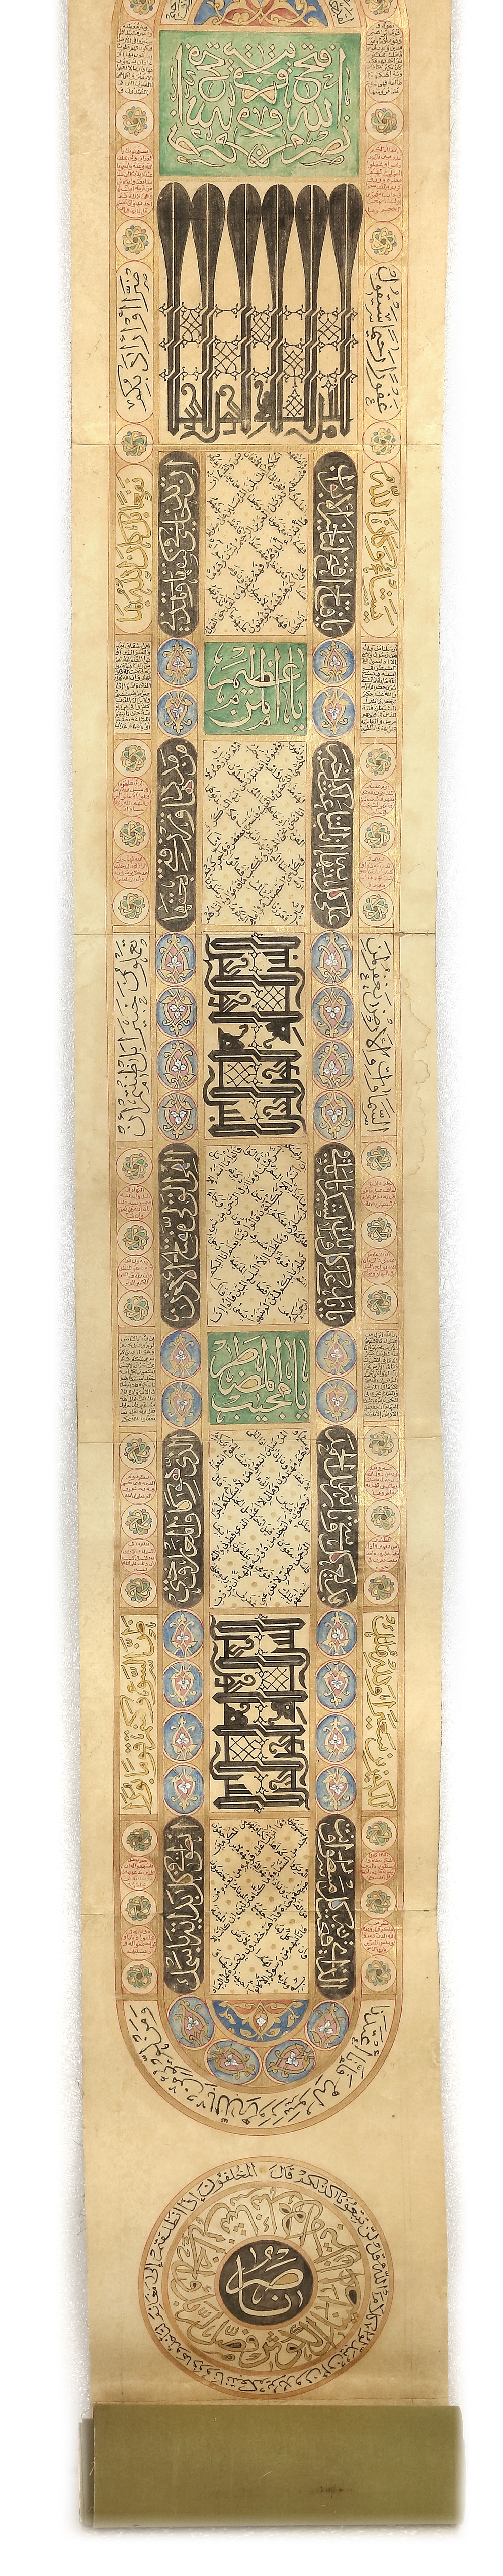 AN OTTOMAN ILLUMINATED PRAYER SCROLL, OTTOMAN TURKEY, 18TH CENTURY - Image 4 of 6